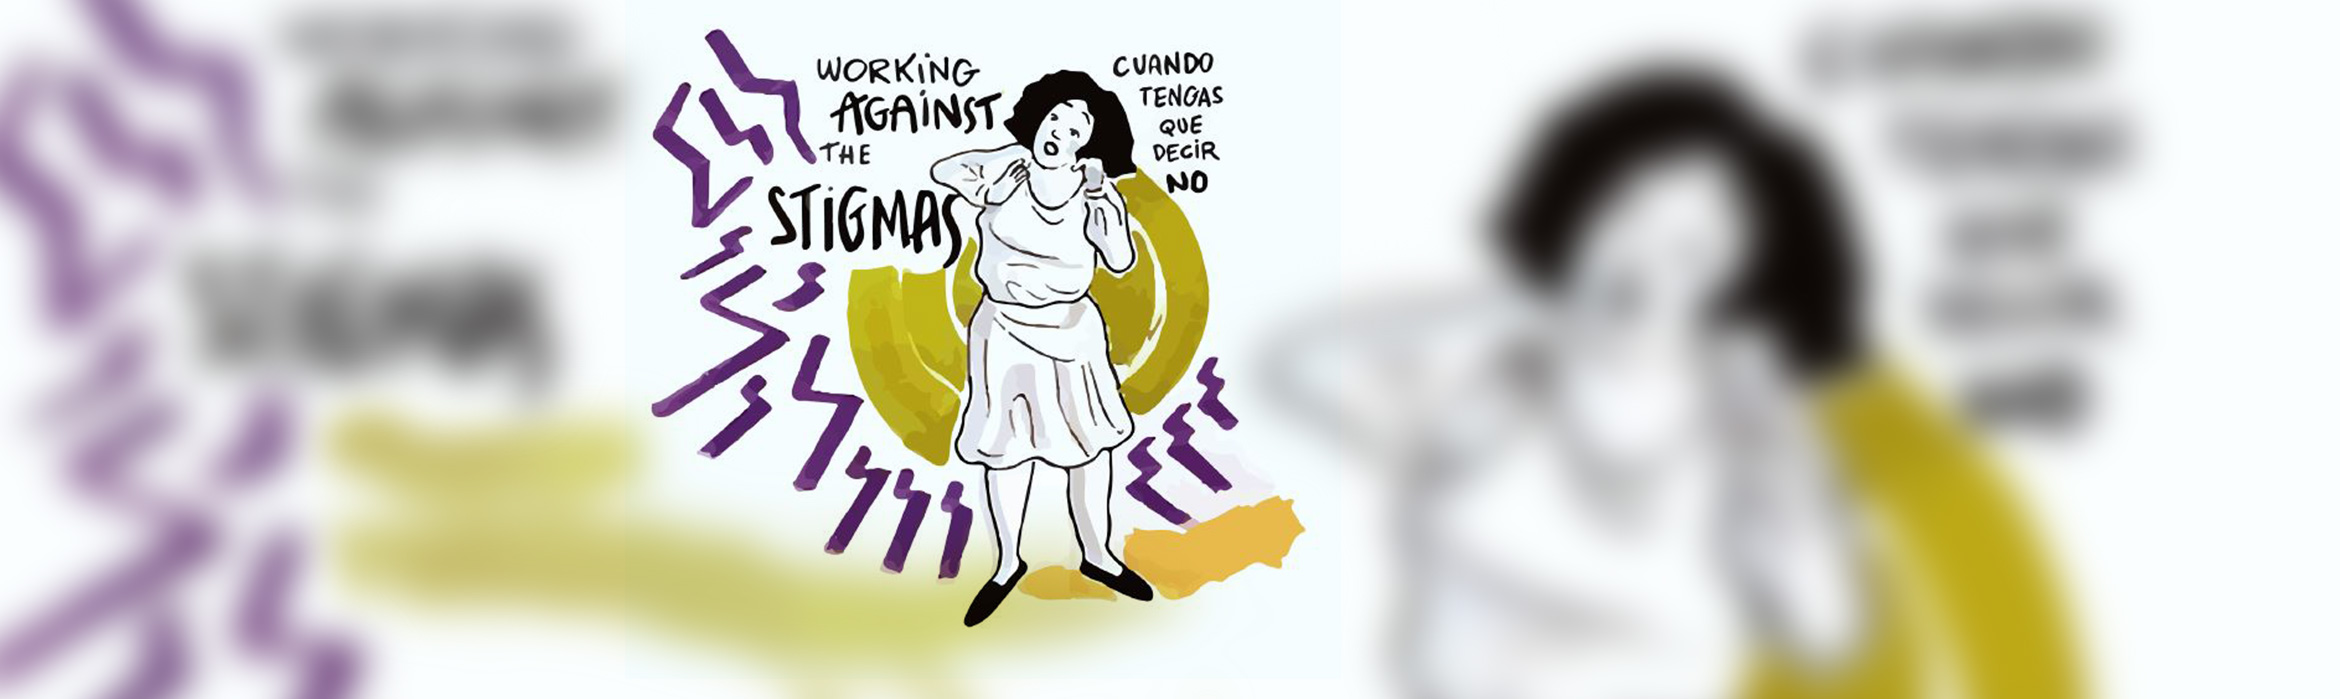 Ilustración contra los estigmas mujer